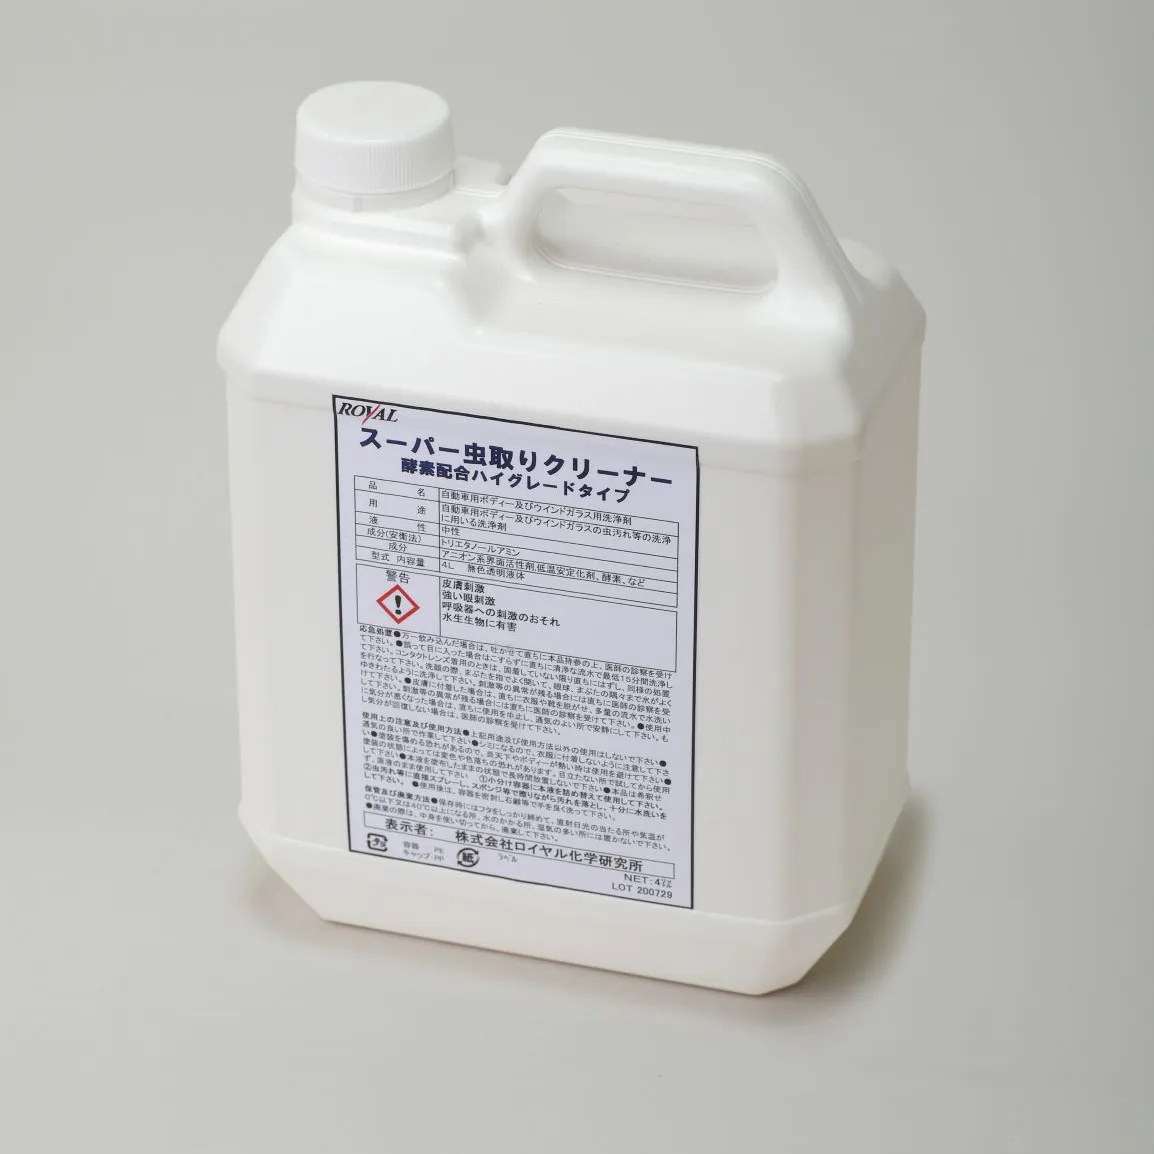 Limpiador para eliminar insectos SUPER, hecho en Japón, OEM disponible